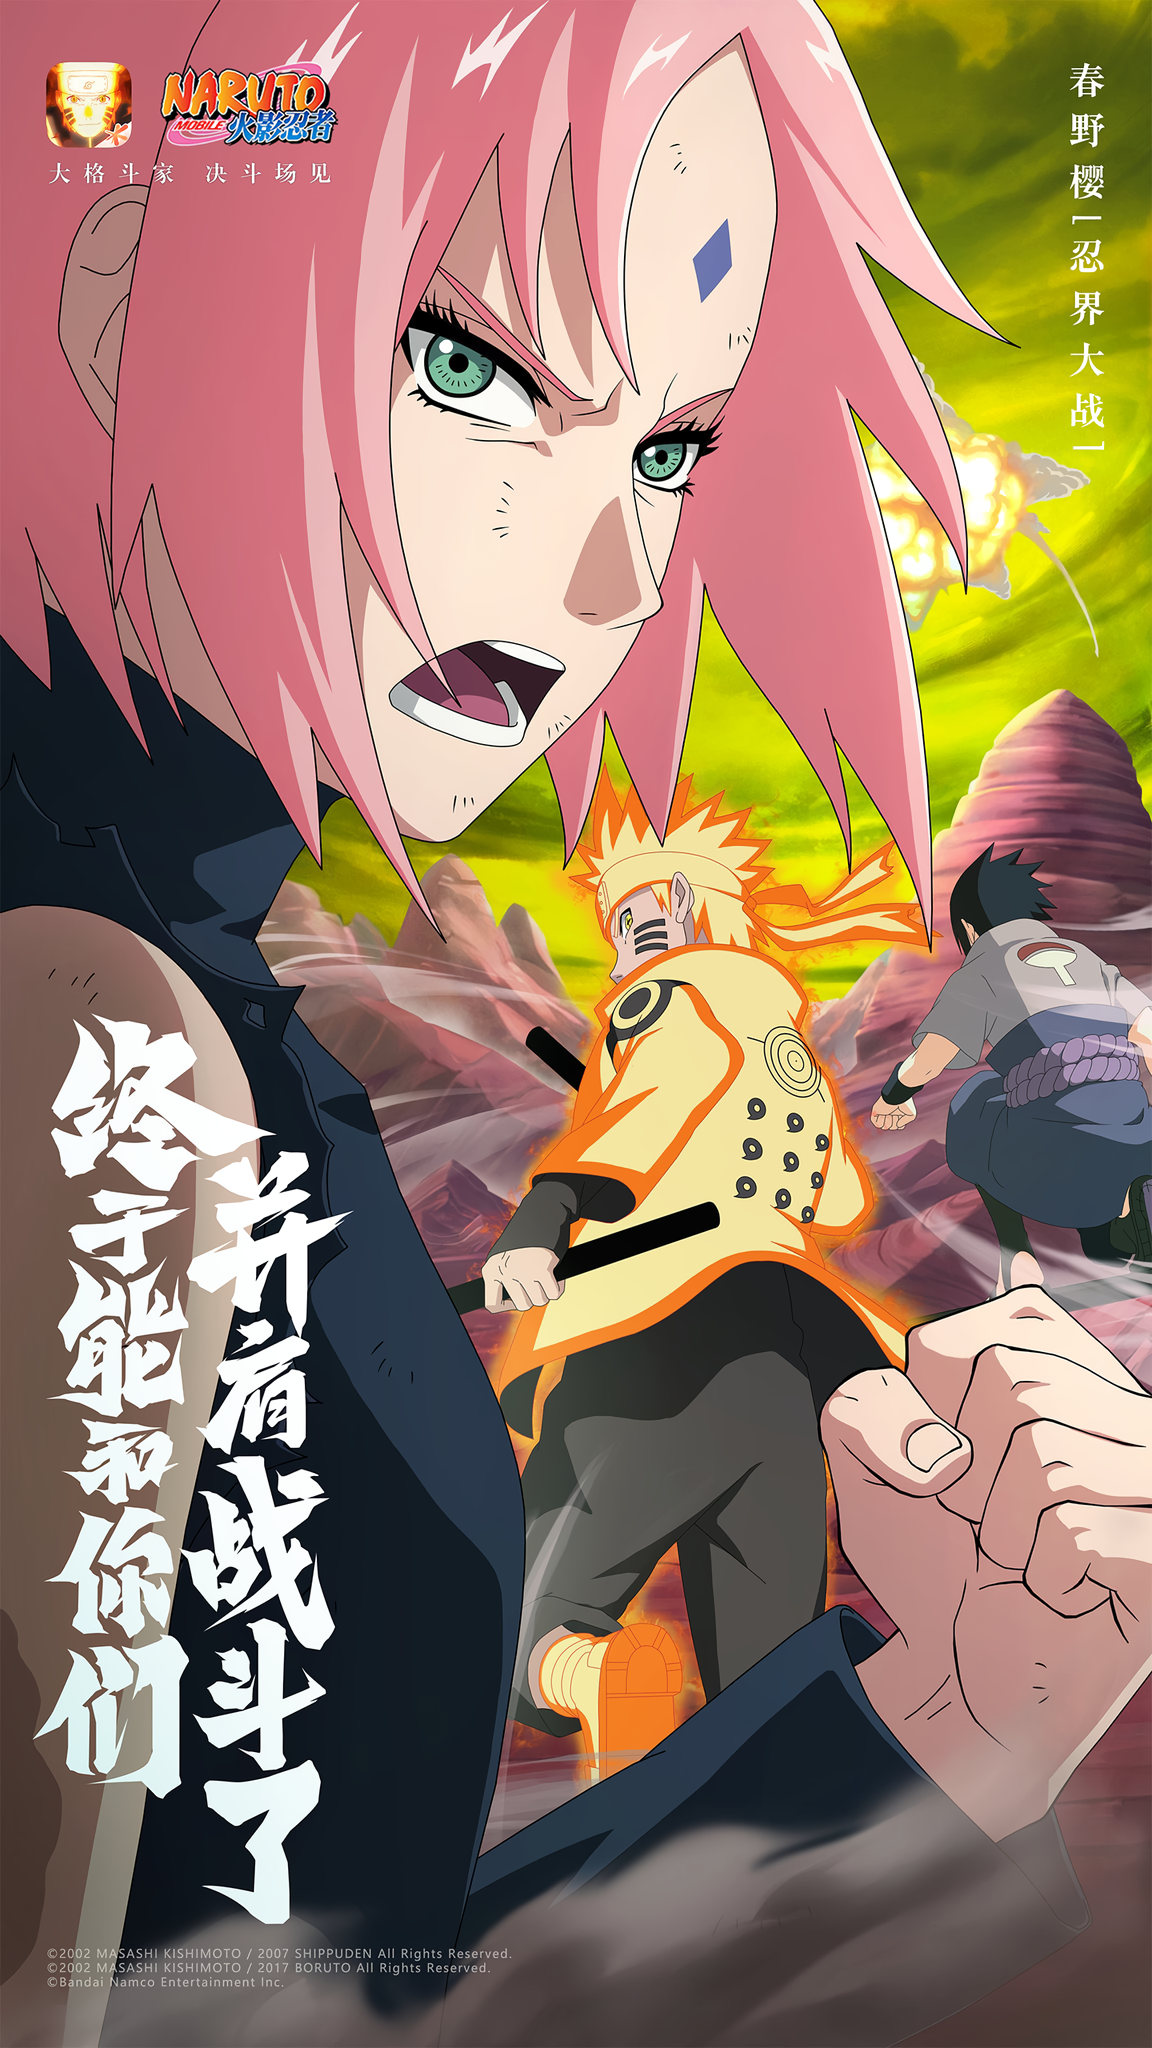 Naruto Mobile: UPANDO A CONTA NOVA #44 l RECRUTEI A SAKURA